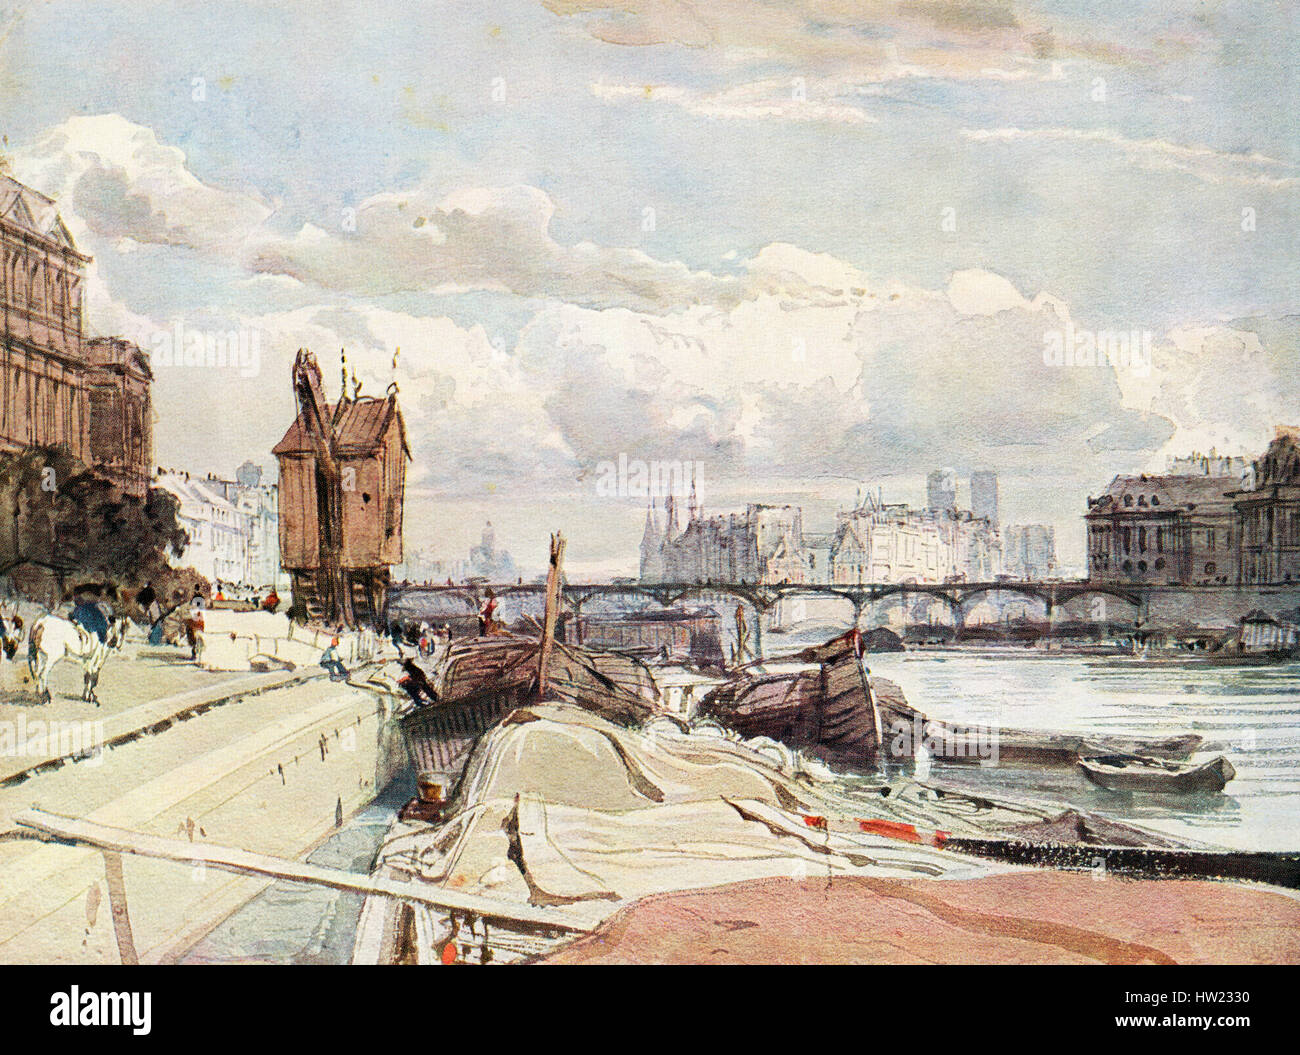 Der Quai du Louvre und der Pont des Arts, Paris, Frankreich im 19. Jahrhundert. Nach dem Gemälde von Richard Parkes Bonington. Stockfoto